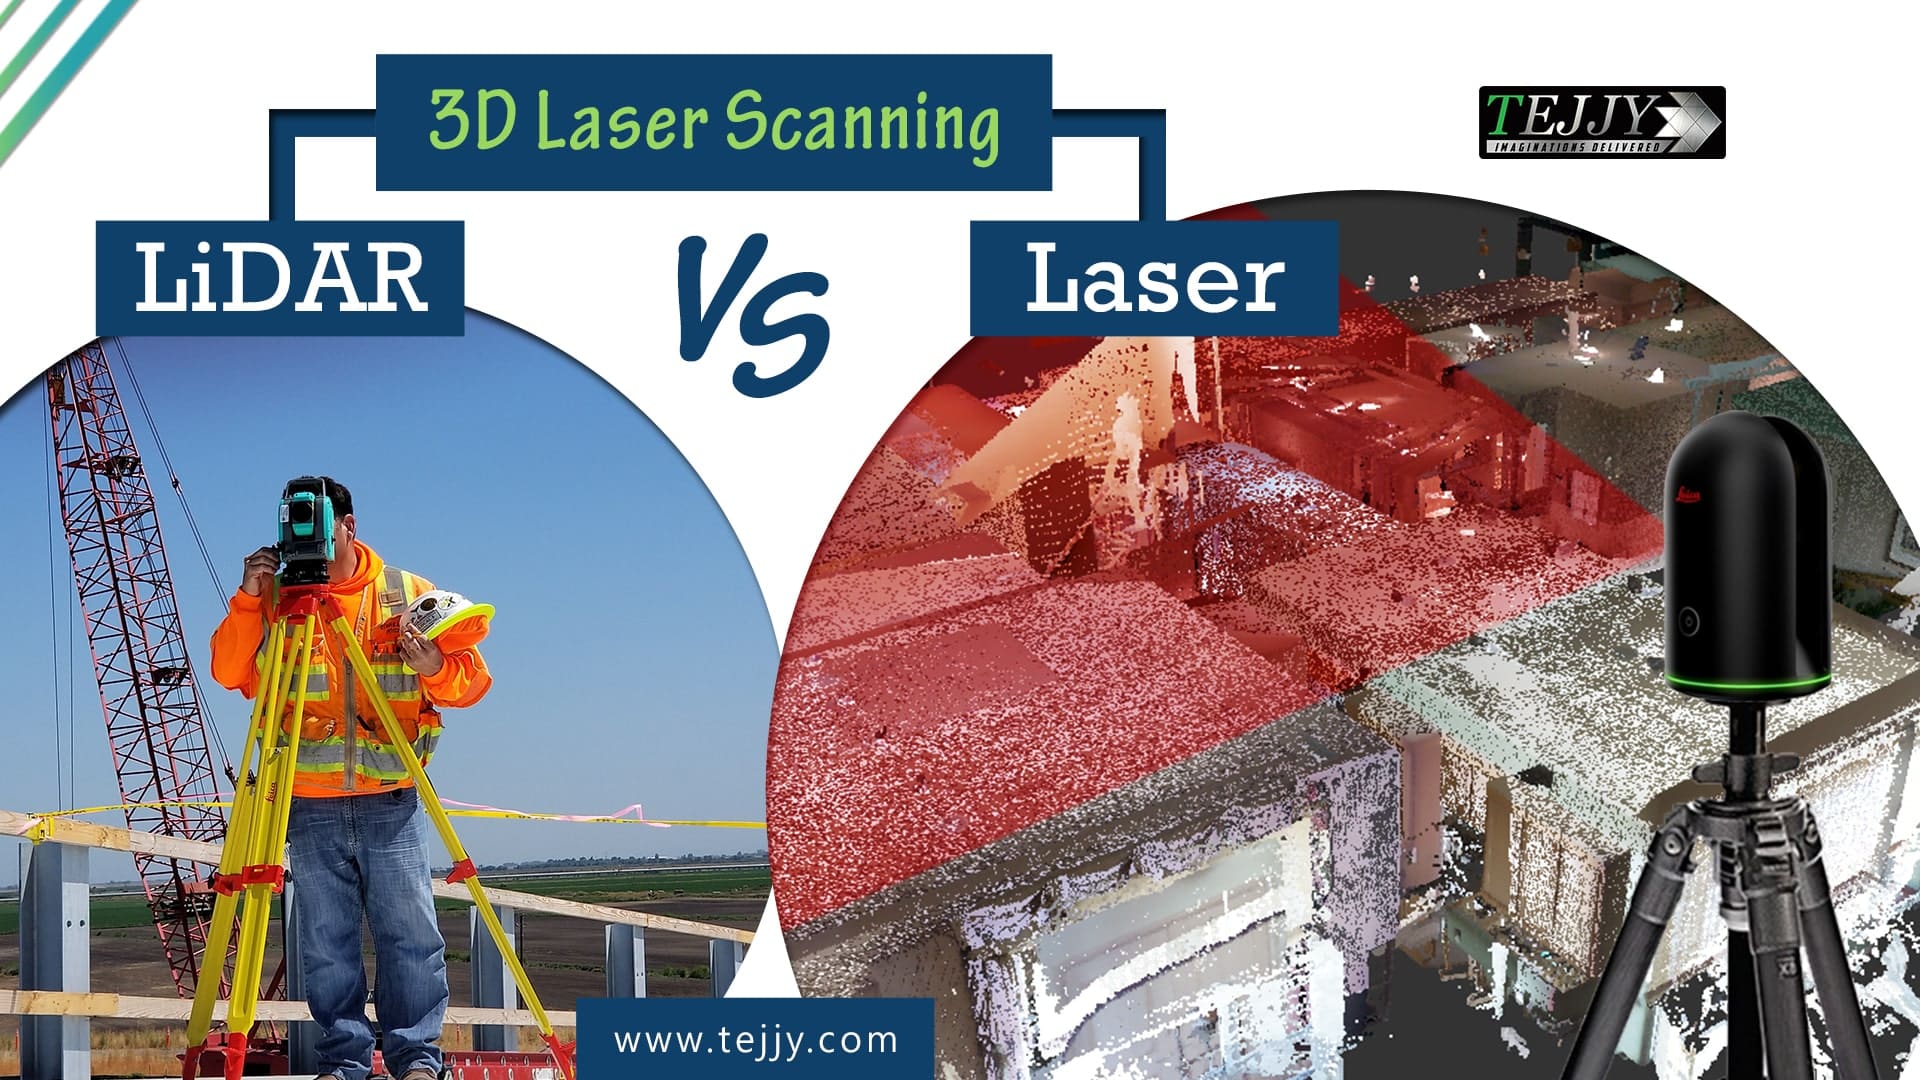 LiDAR vs Laser